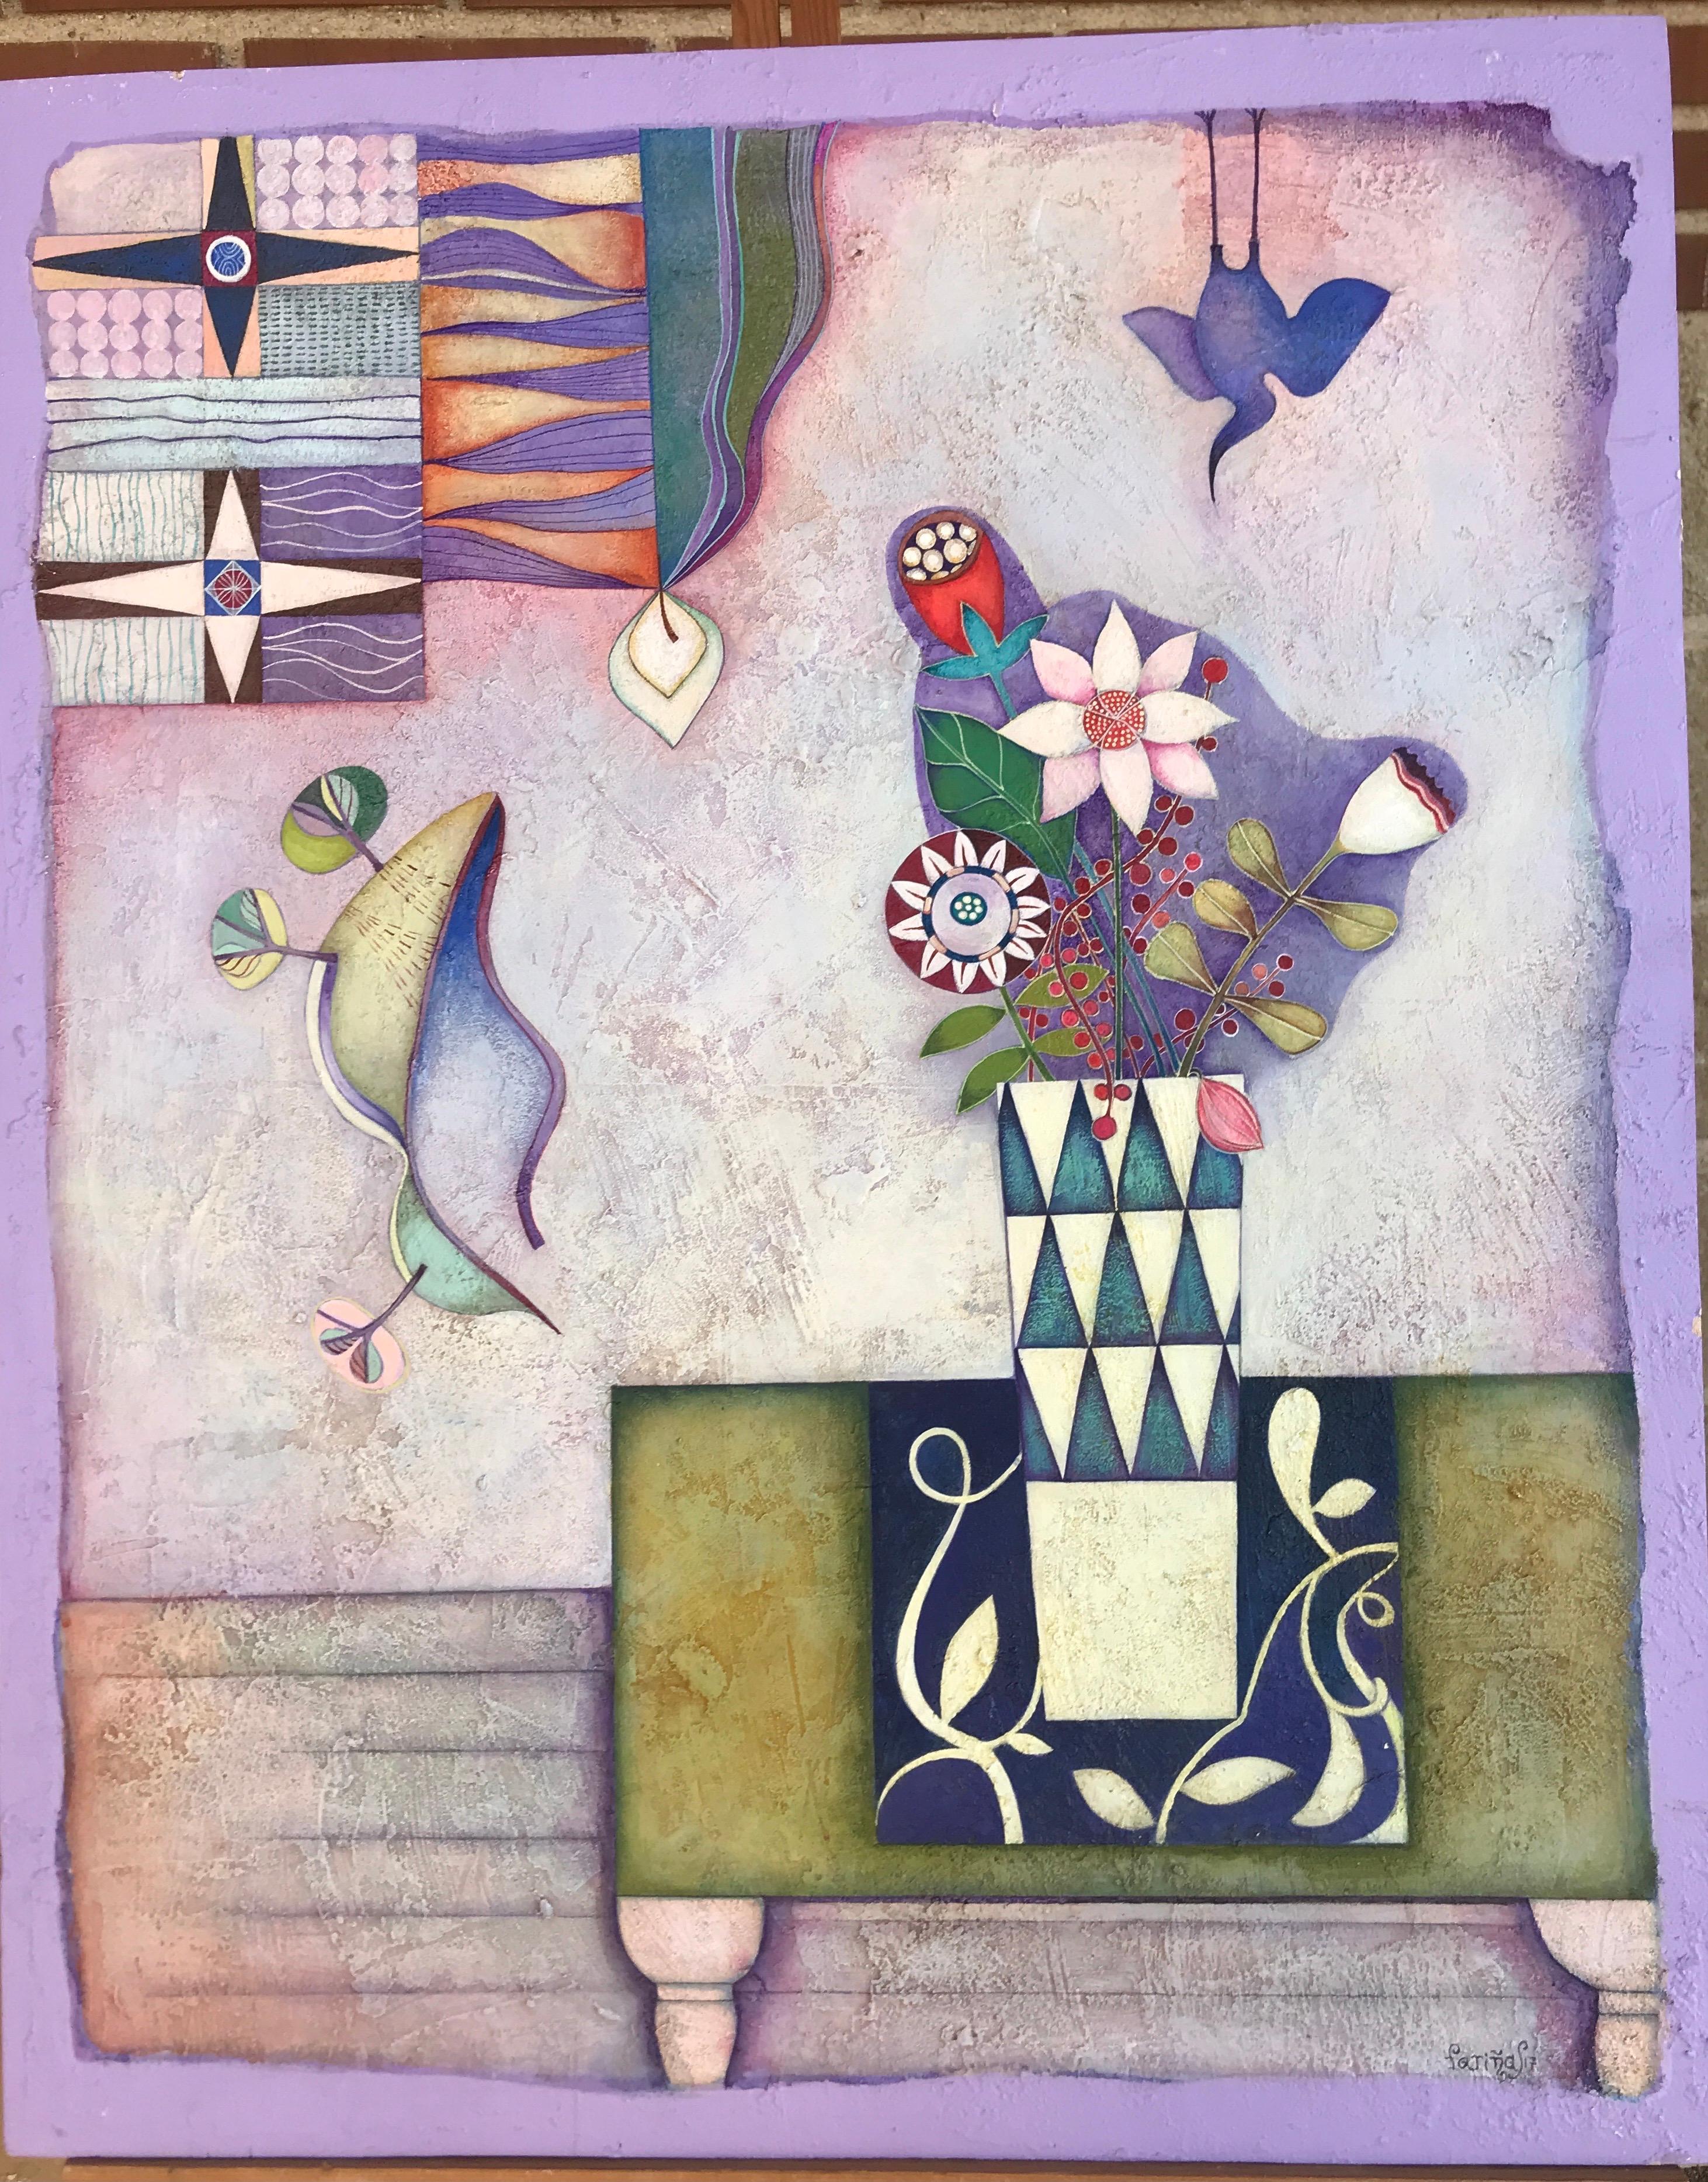 Zu dieser Zeit habe ich Blumen gelegt. Symbolisches, farbenfrohes Volkskunst-Stillleben von Raquel Farias  – Painting von Raquel Fariñas